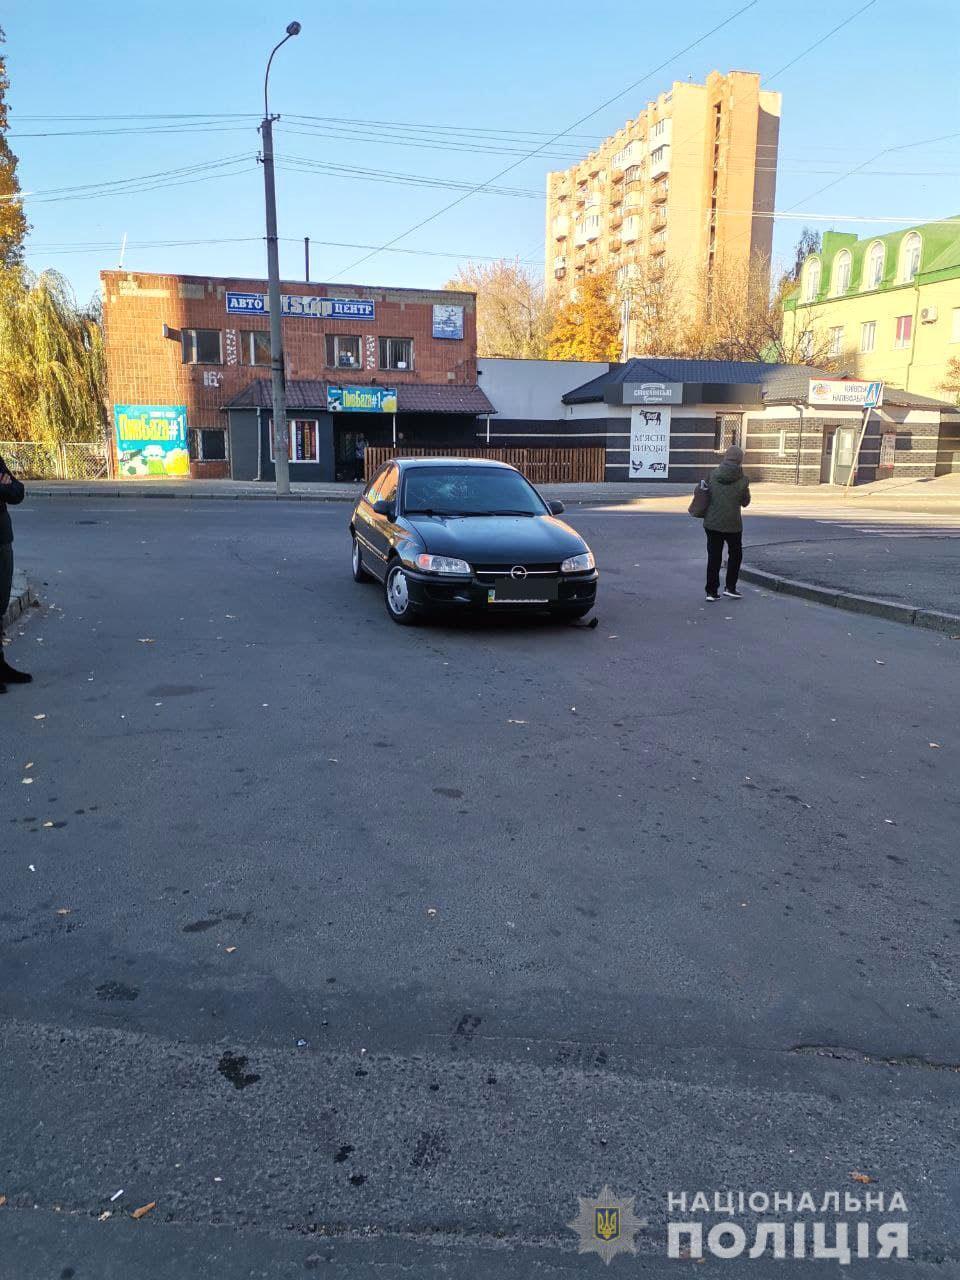 ДТП произошло 25 октября на одной из улиц областного центра.